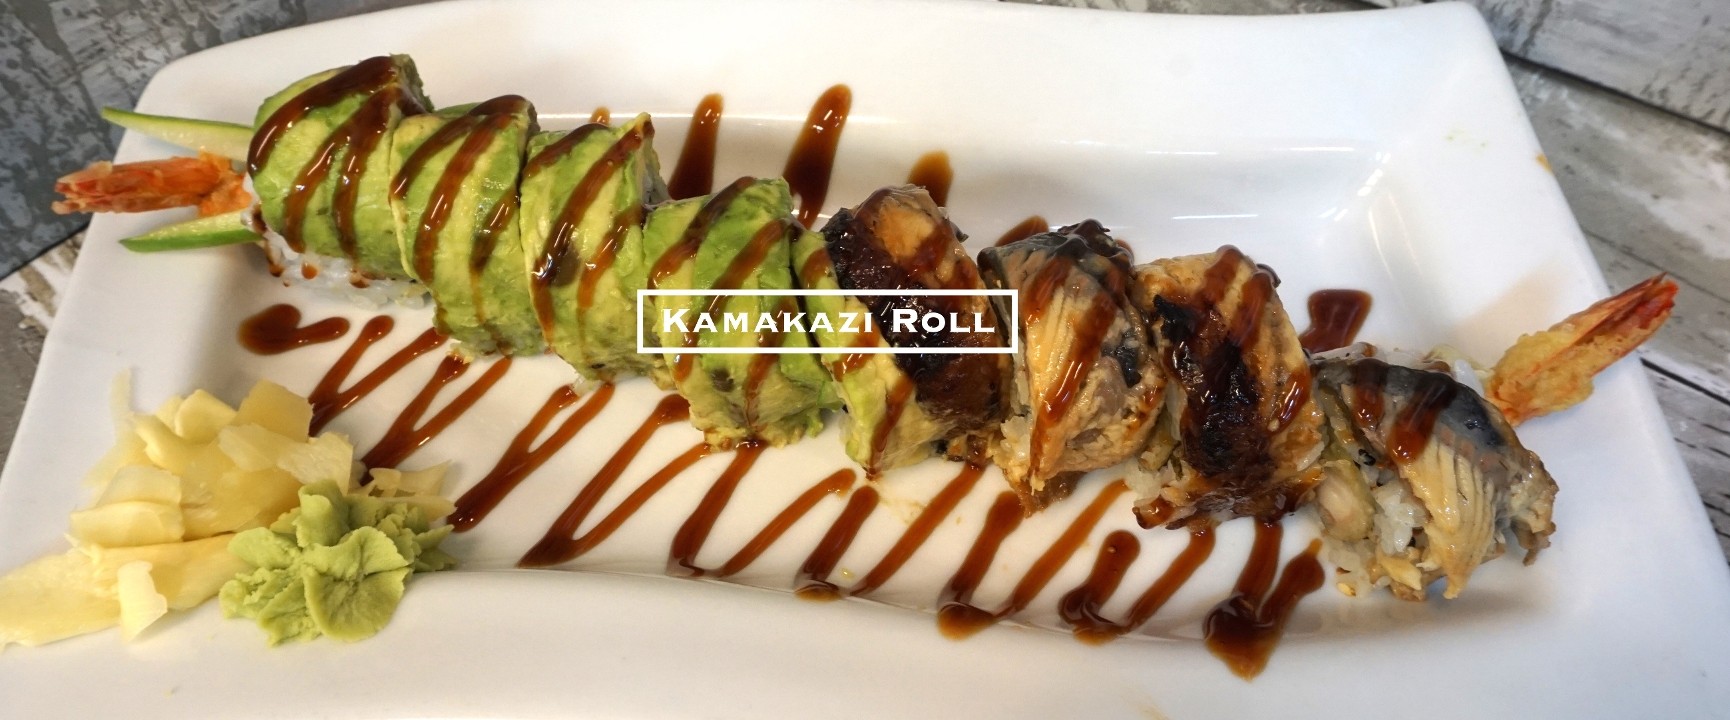 Kamakazi Roll